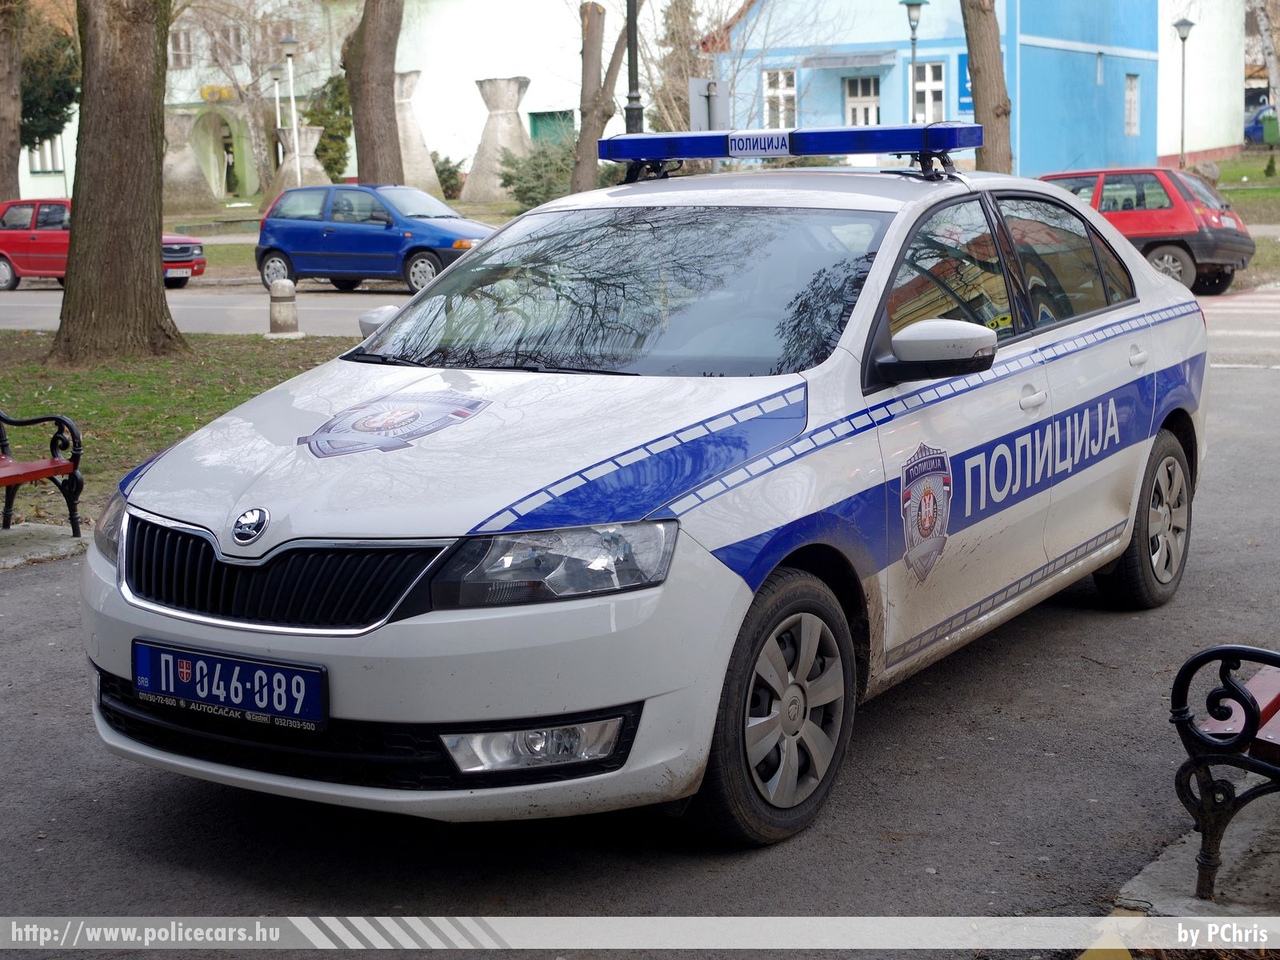 Skoda Rapid, fotó: PChris
Keywords: szerb Szerbia rendőr rendőrautó rendőrség Serbia serbian police policecar